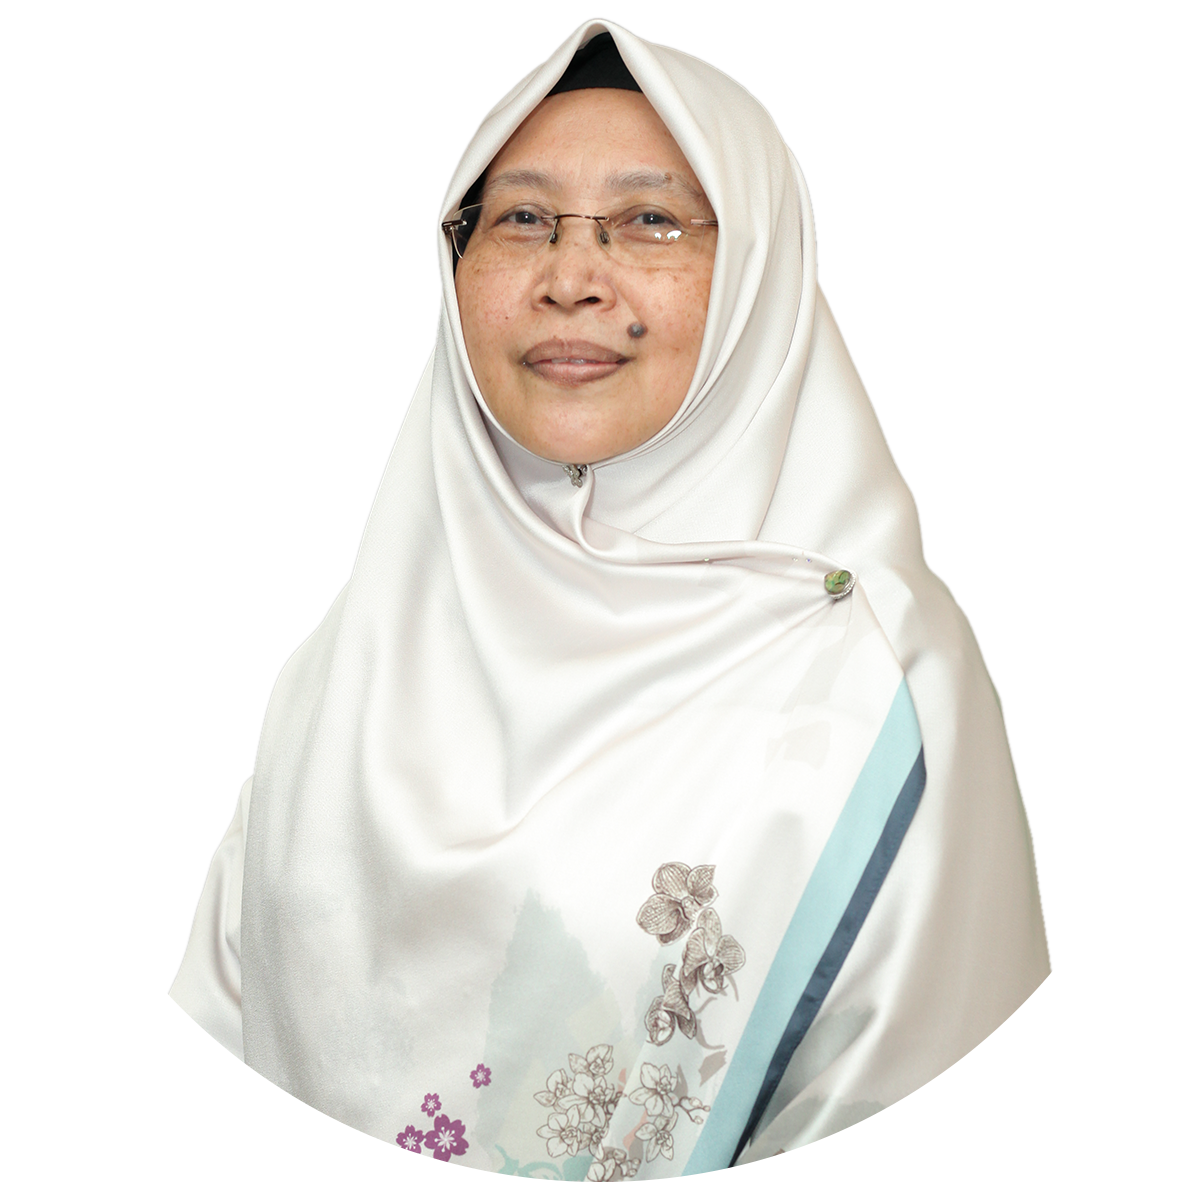 About IIUM – International Islamic University Malaysia